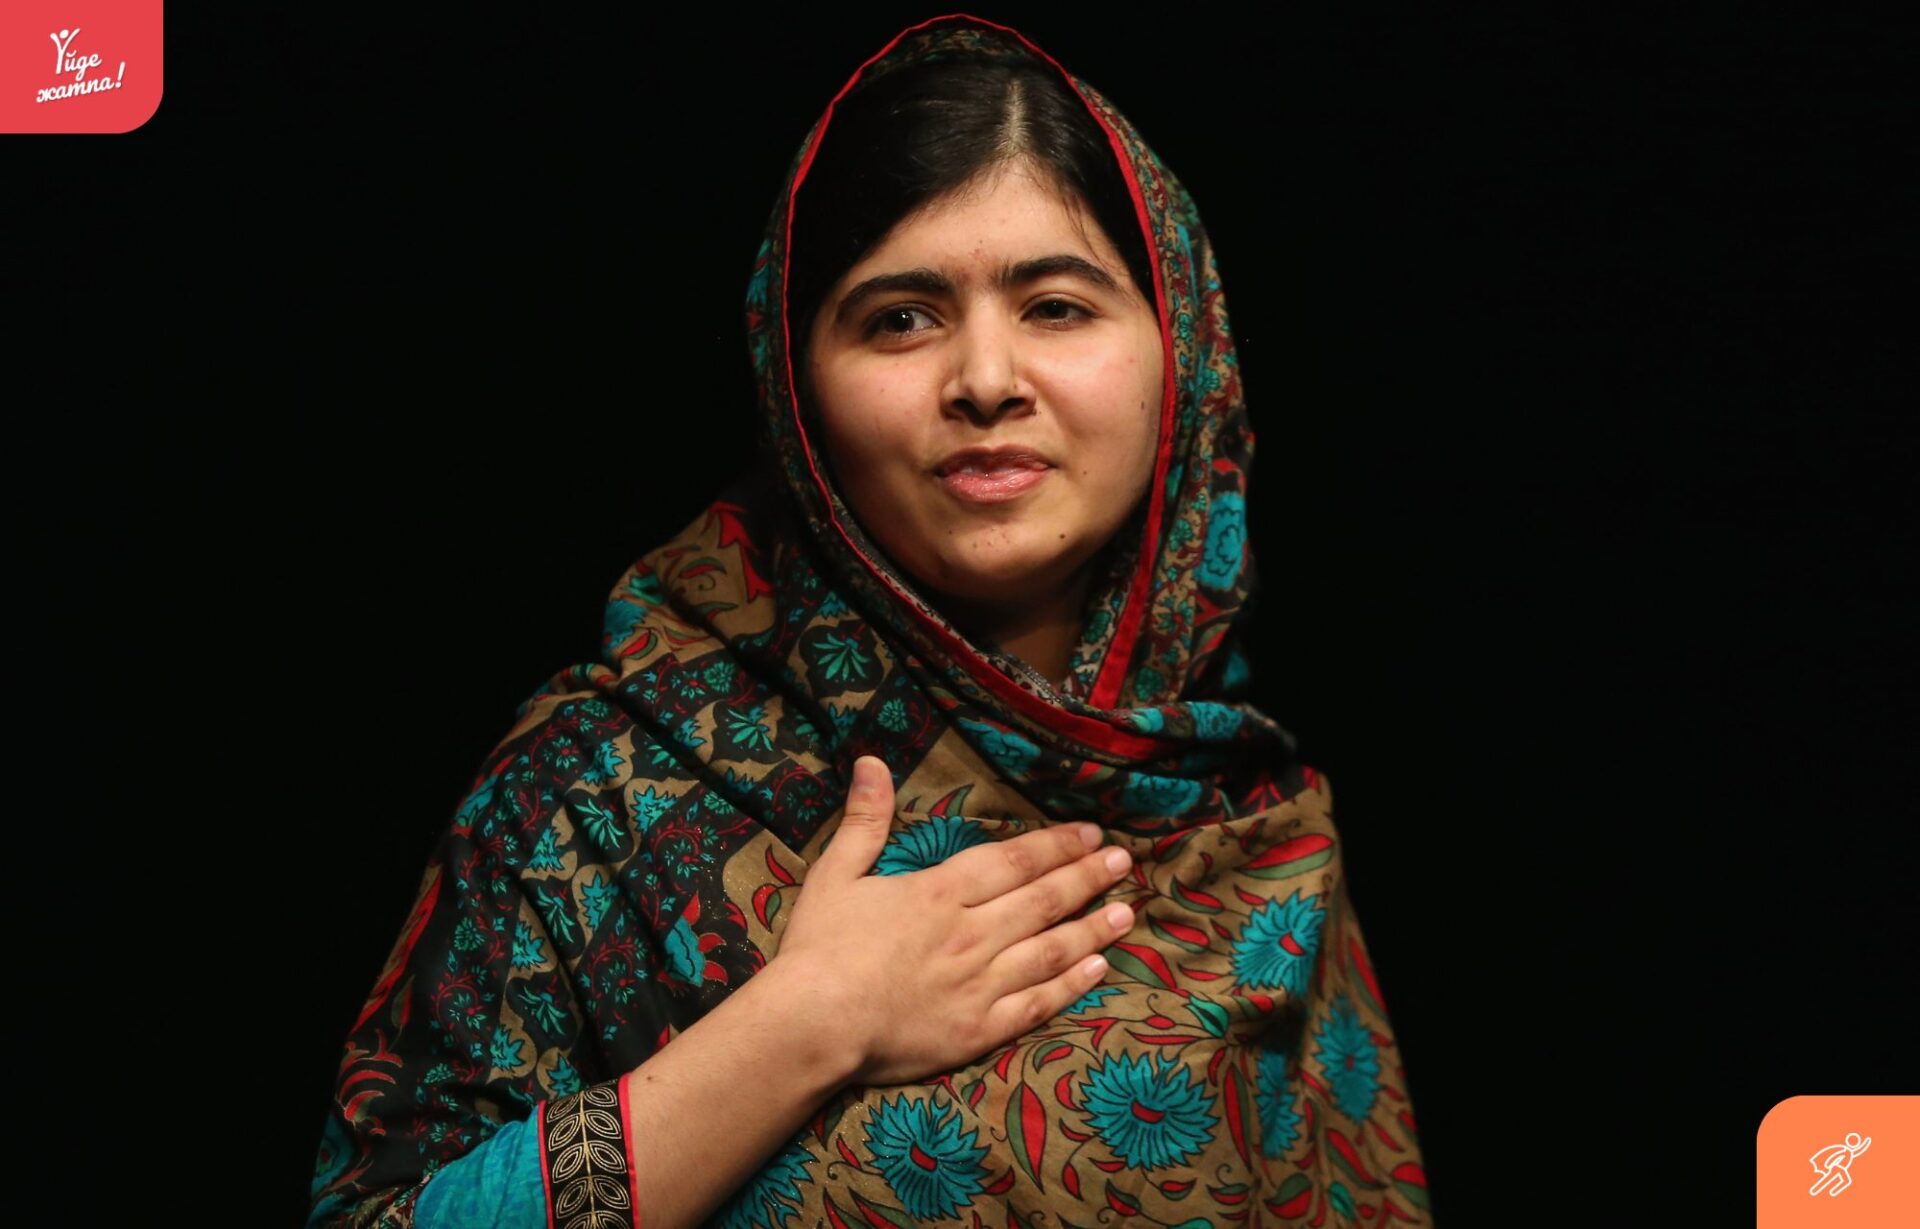 17 жасында батылдығы үшін “Нобель”сыйлығын алған Малала Юсуфзай туралы не біоеміз?